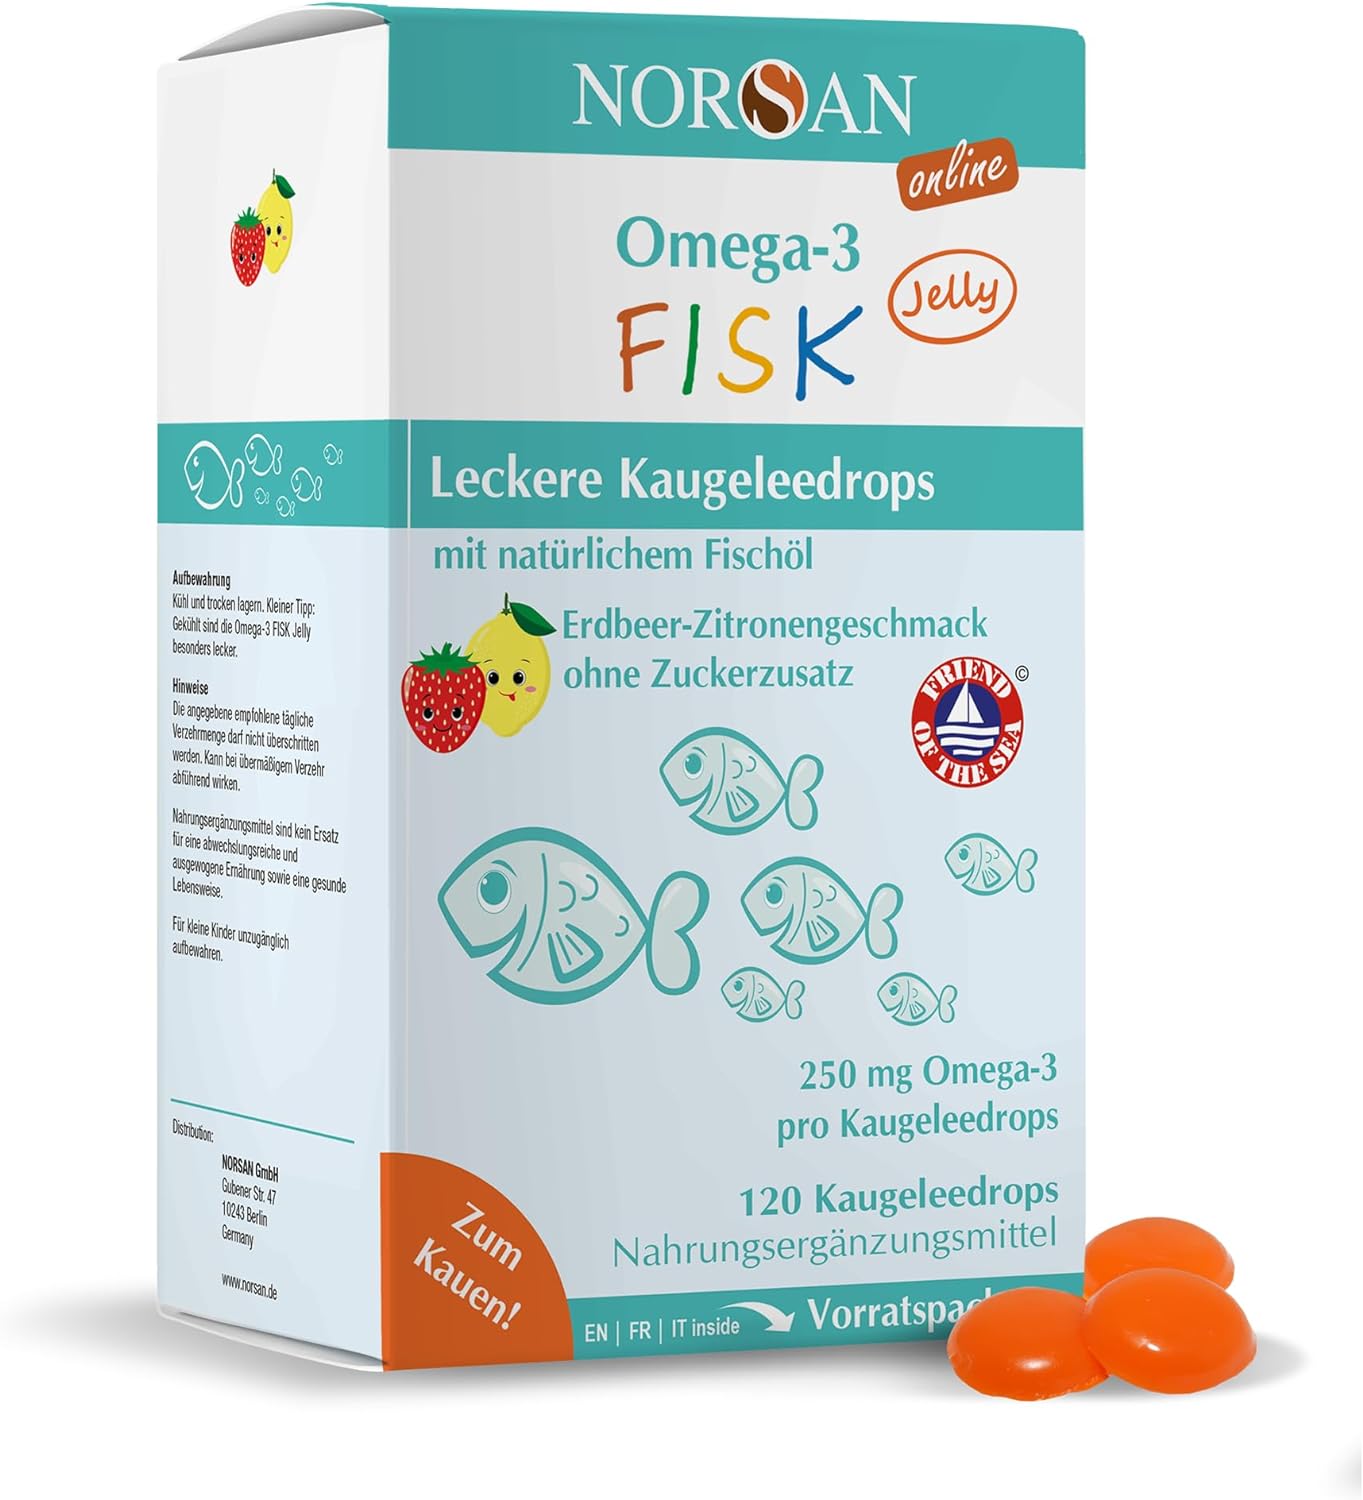 Norsan Omega-3 FISK Jelly | 120 Kaugeleedrops | mit natürlichem Fischöl | Erdbeer-Zitronengeschmack | Omega-3 für Kinder